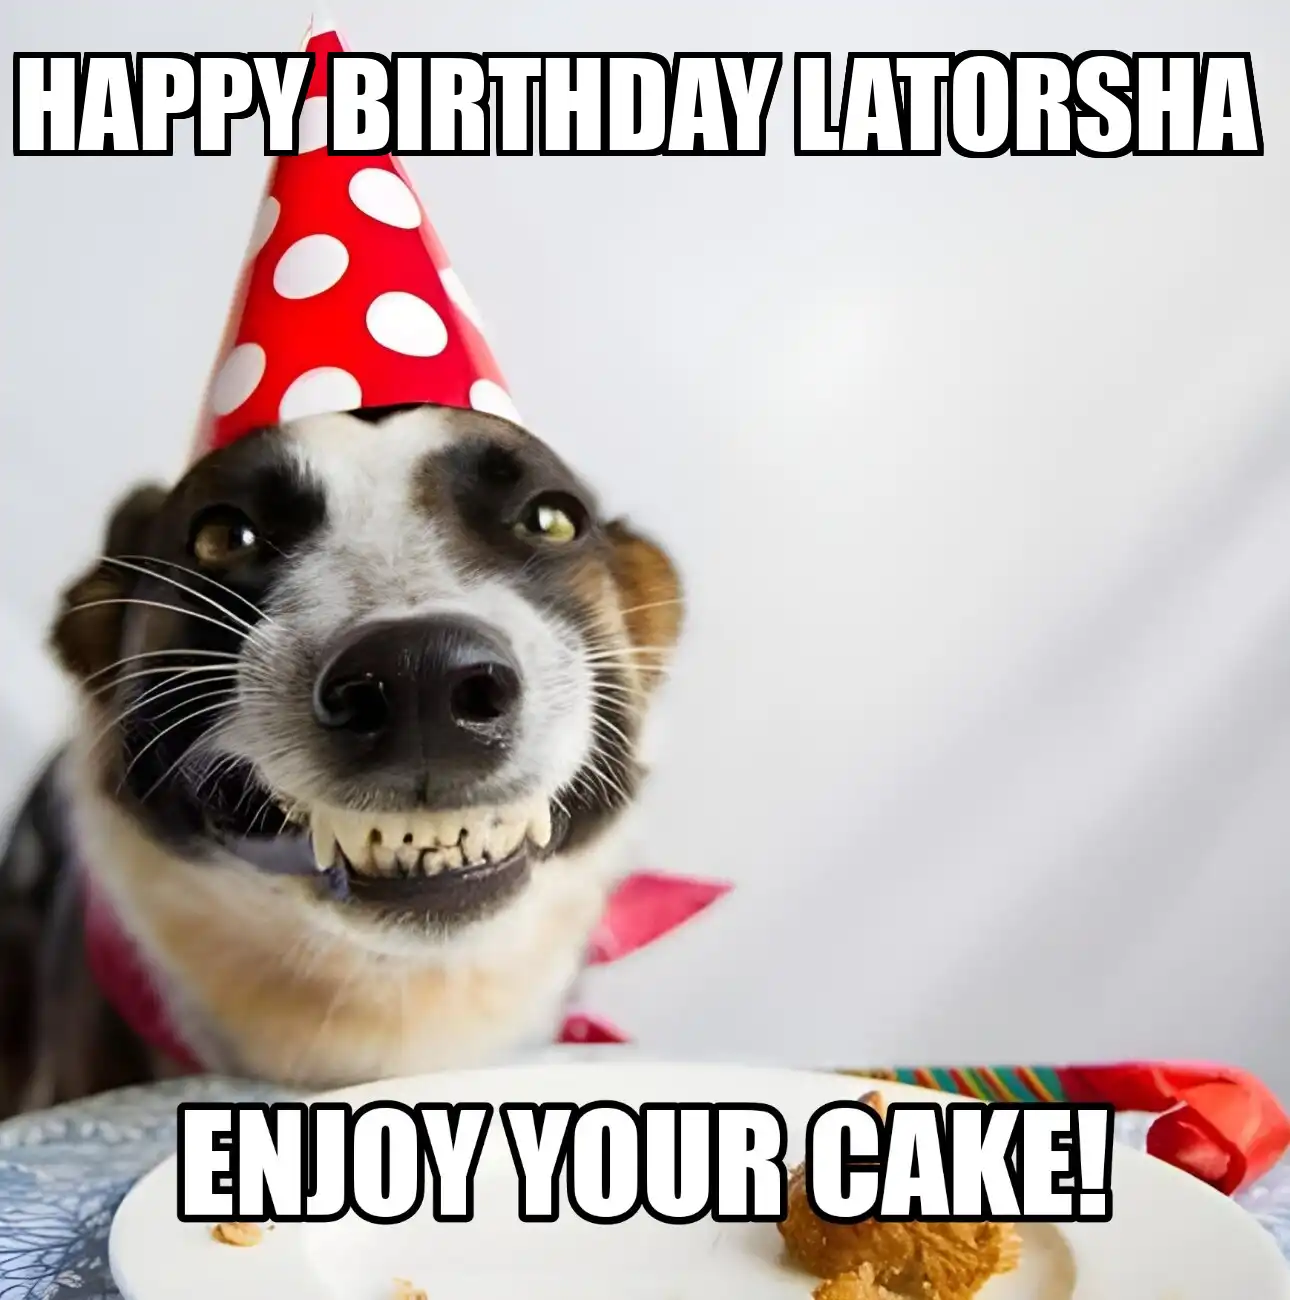 Happy Birthday Latorsha Enjoy Your Cake Dog Meme